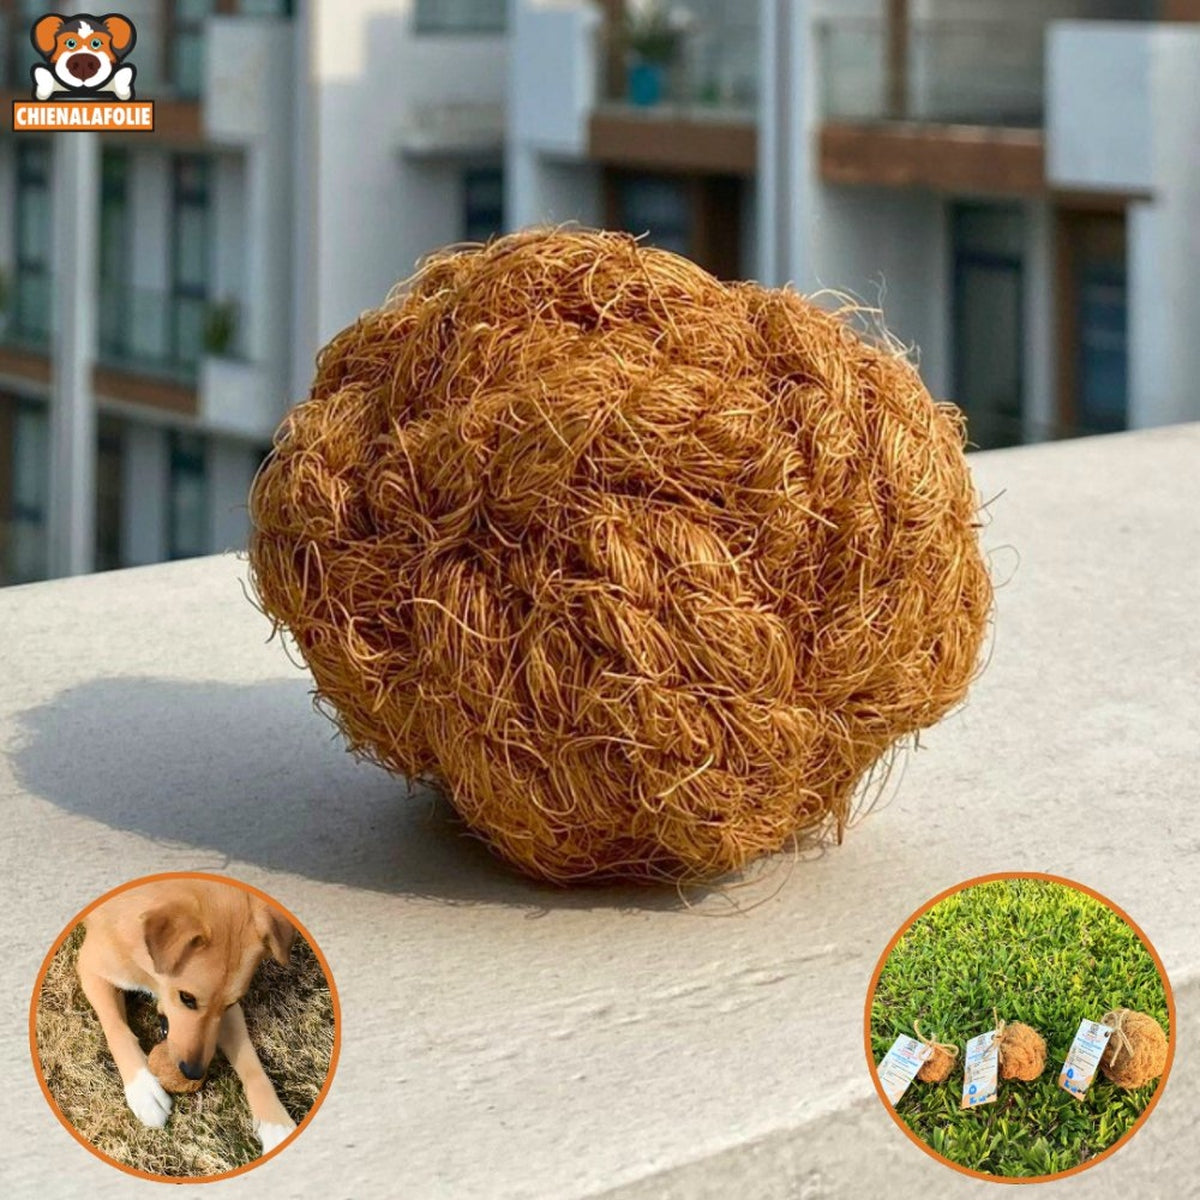 Balle de coco à mâcher pour chien - coco chew ball - S - Balles naturelles - Chienalafolie